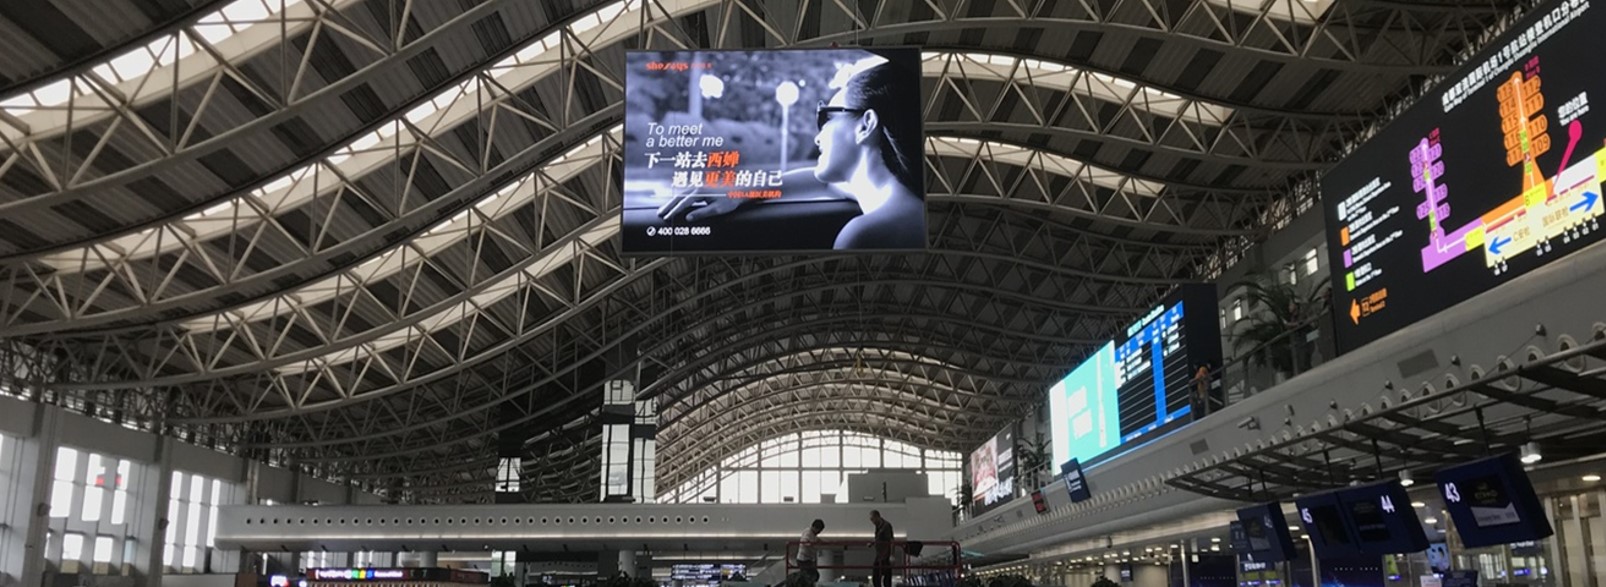 成都双流机场广告-国际出发吊旗2